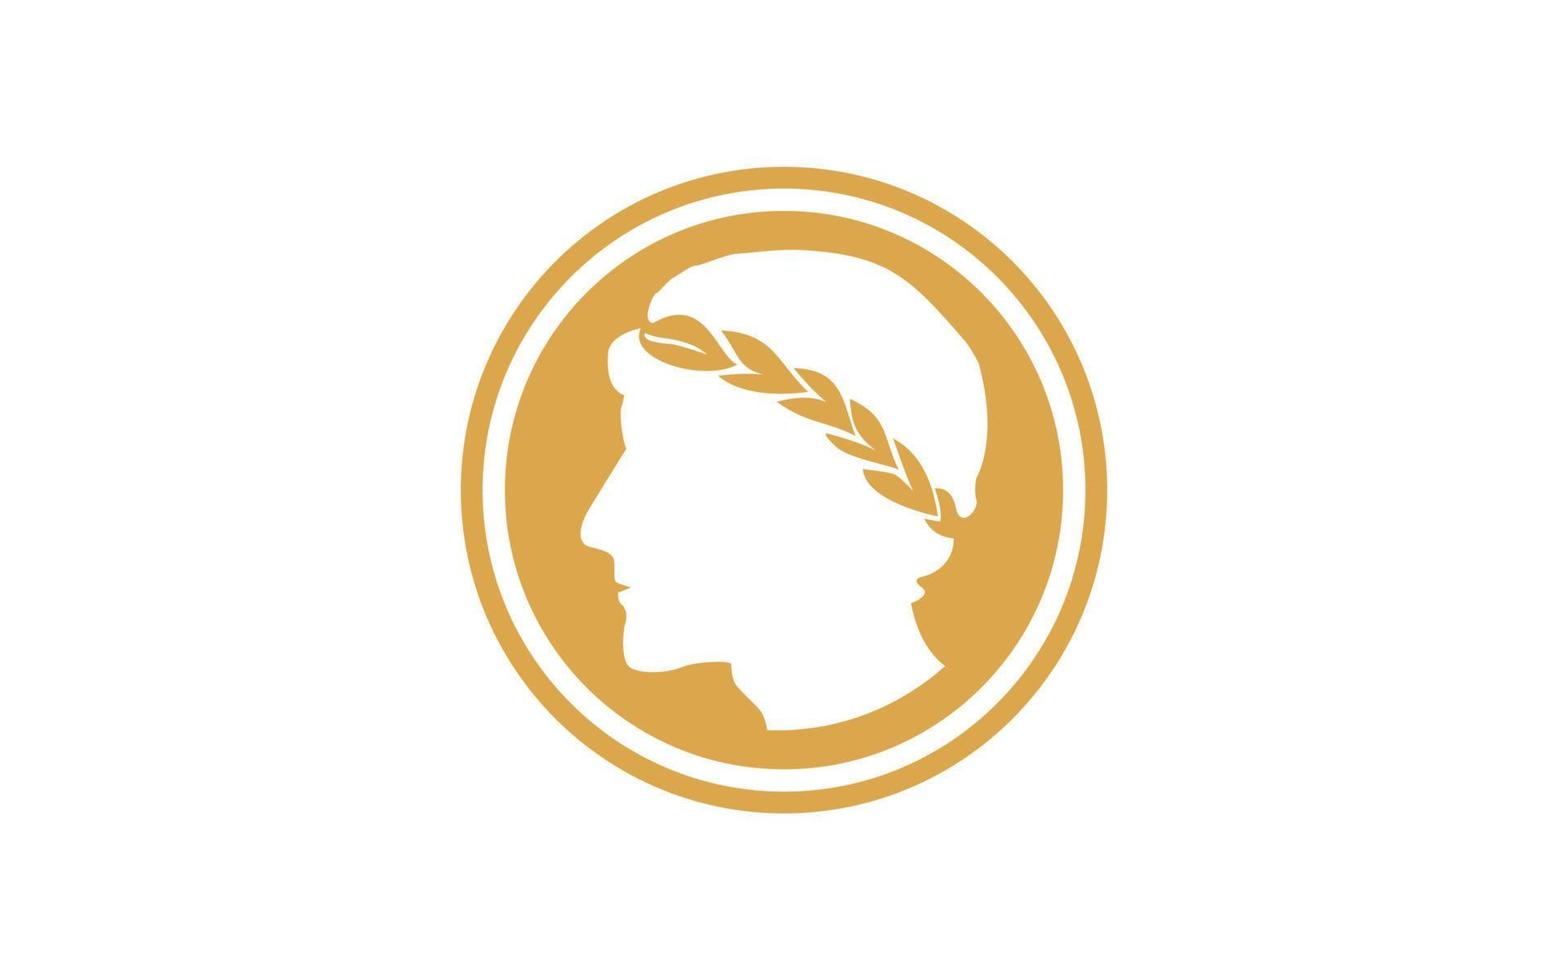 pièce de monnaie grecque antique avec logo de couronne de laurier vecteur